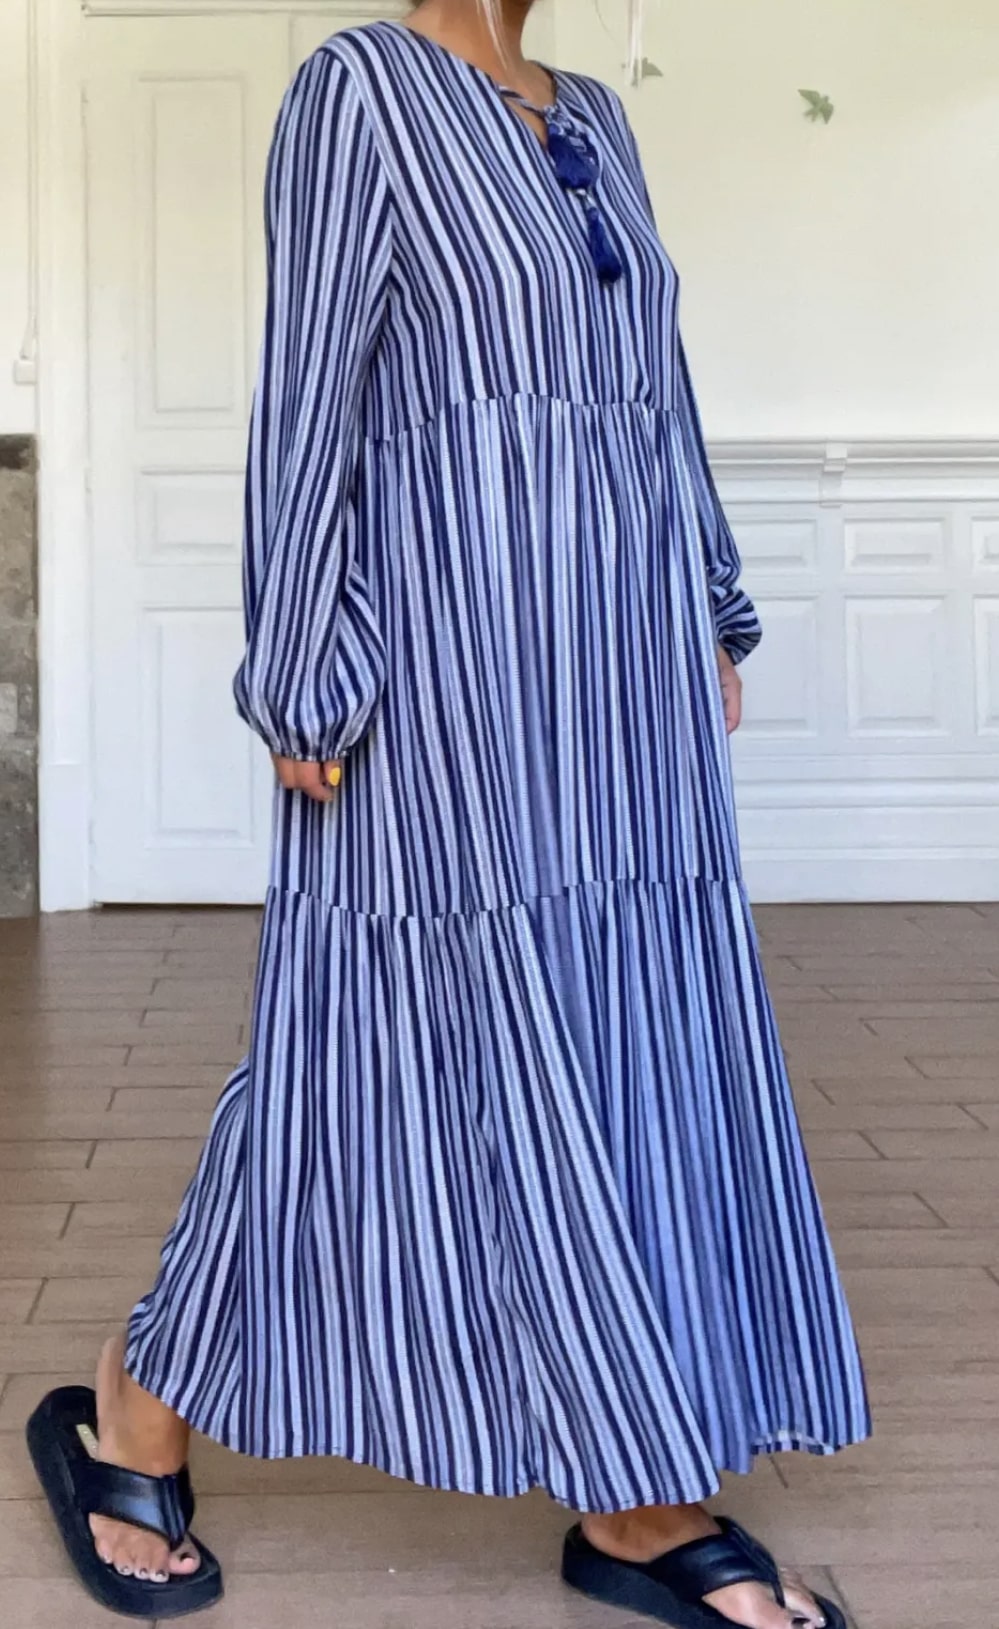 Robe longue à rayures bleues et blanches avec manches longues et encolure détaillée.